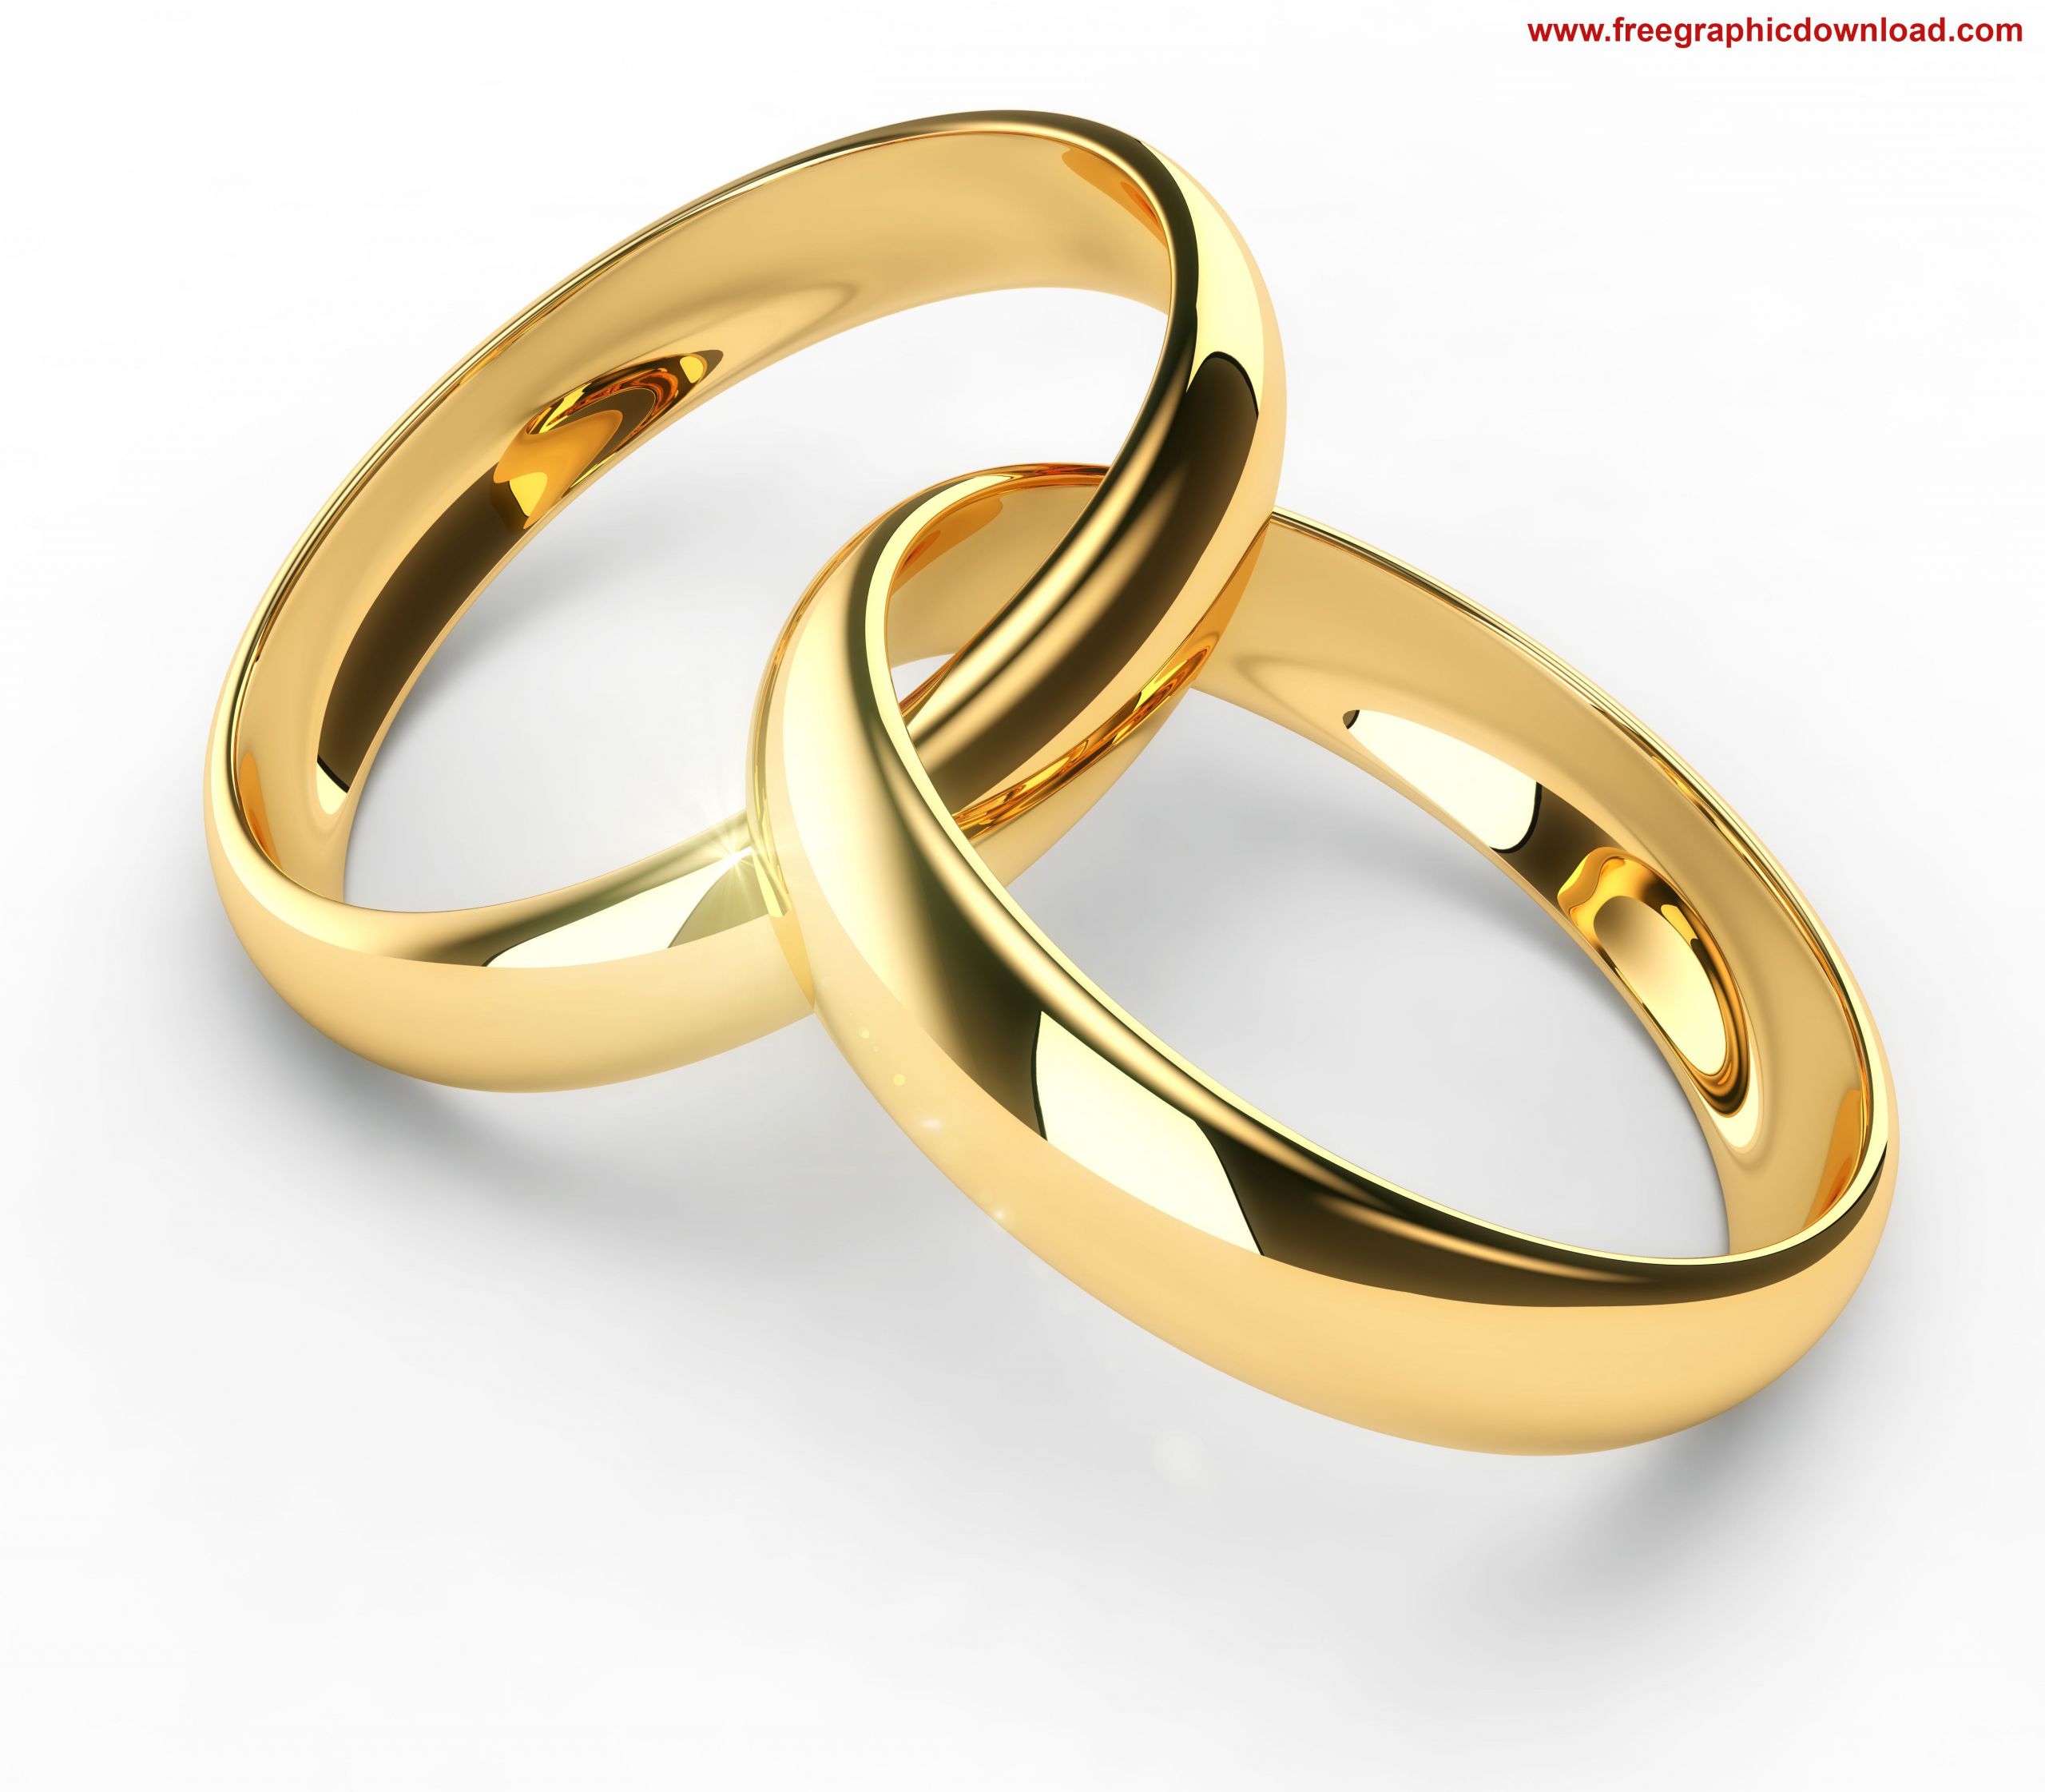 Free Wedding Rings
 wedding rings Free tawfiq